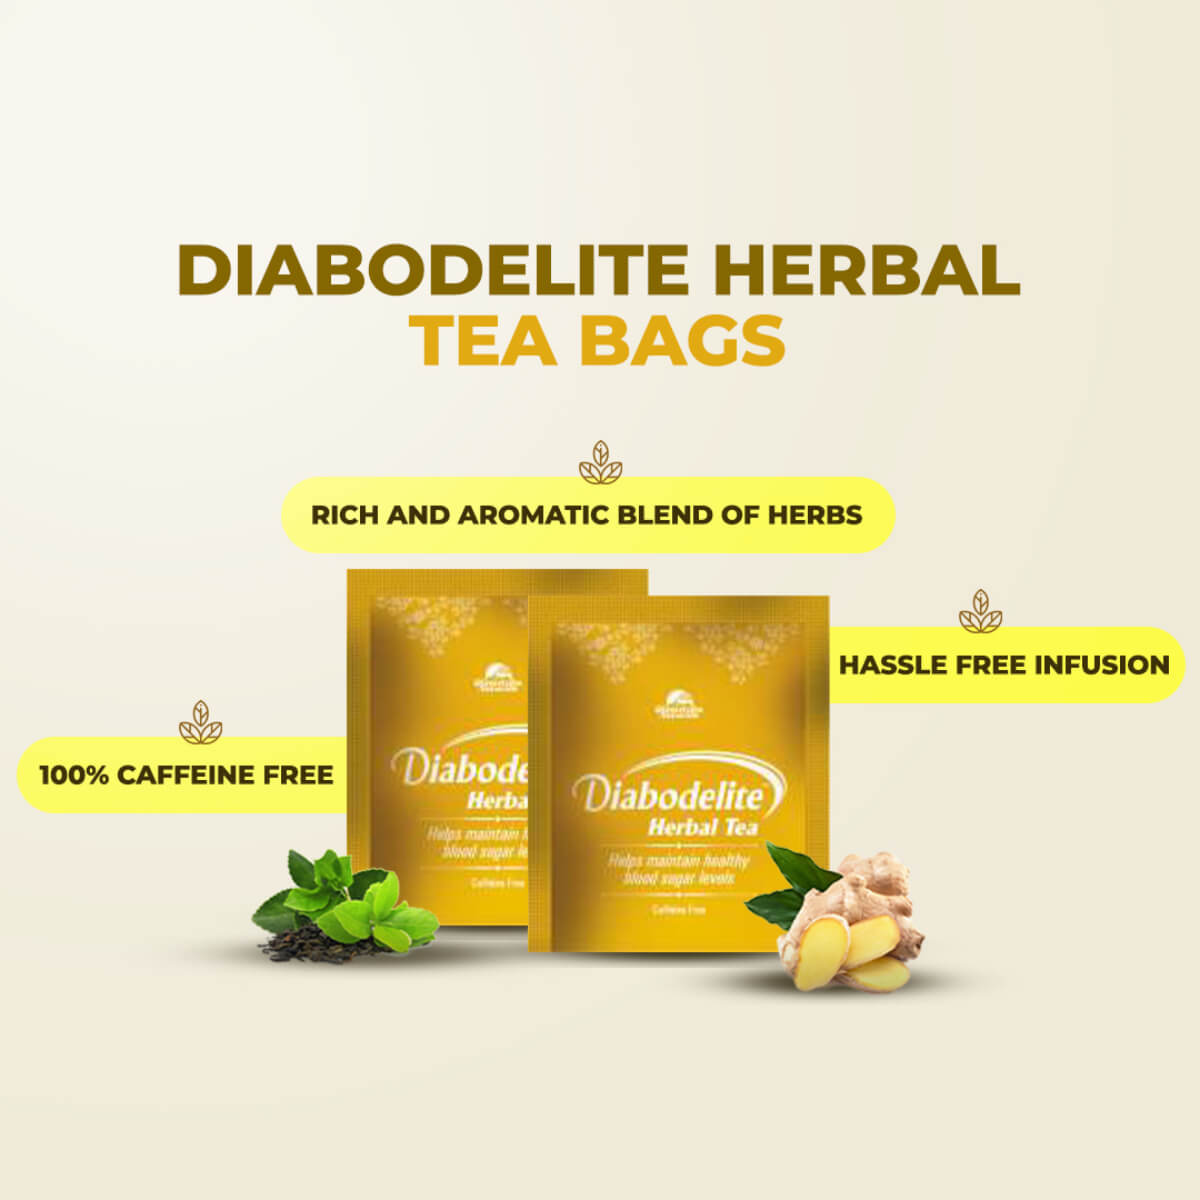 Diabodelite Tea 30's Pack of 2 (Diabodelite Tea Pack of 5 Free)